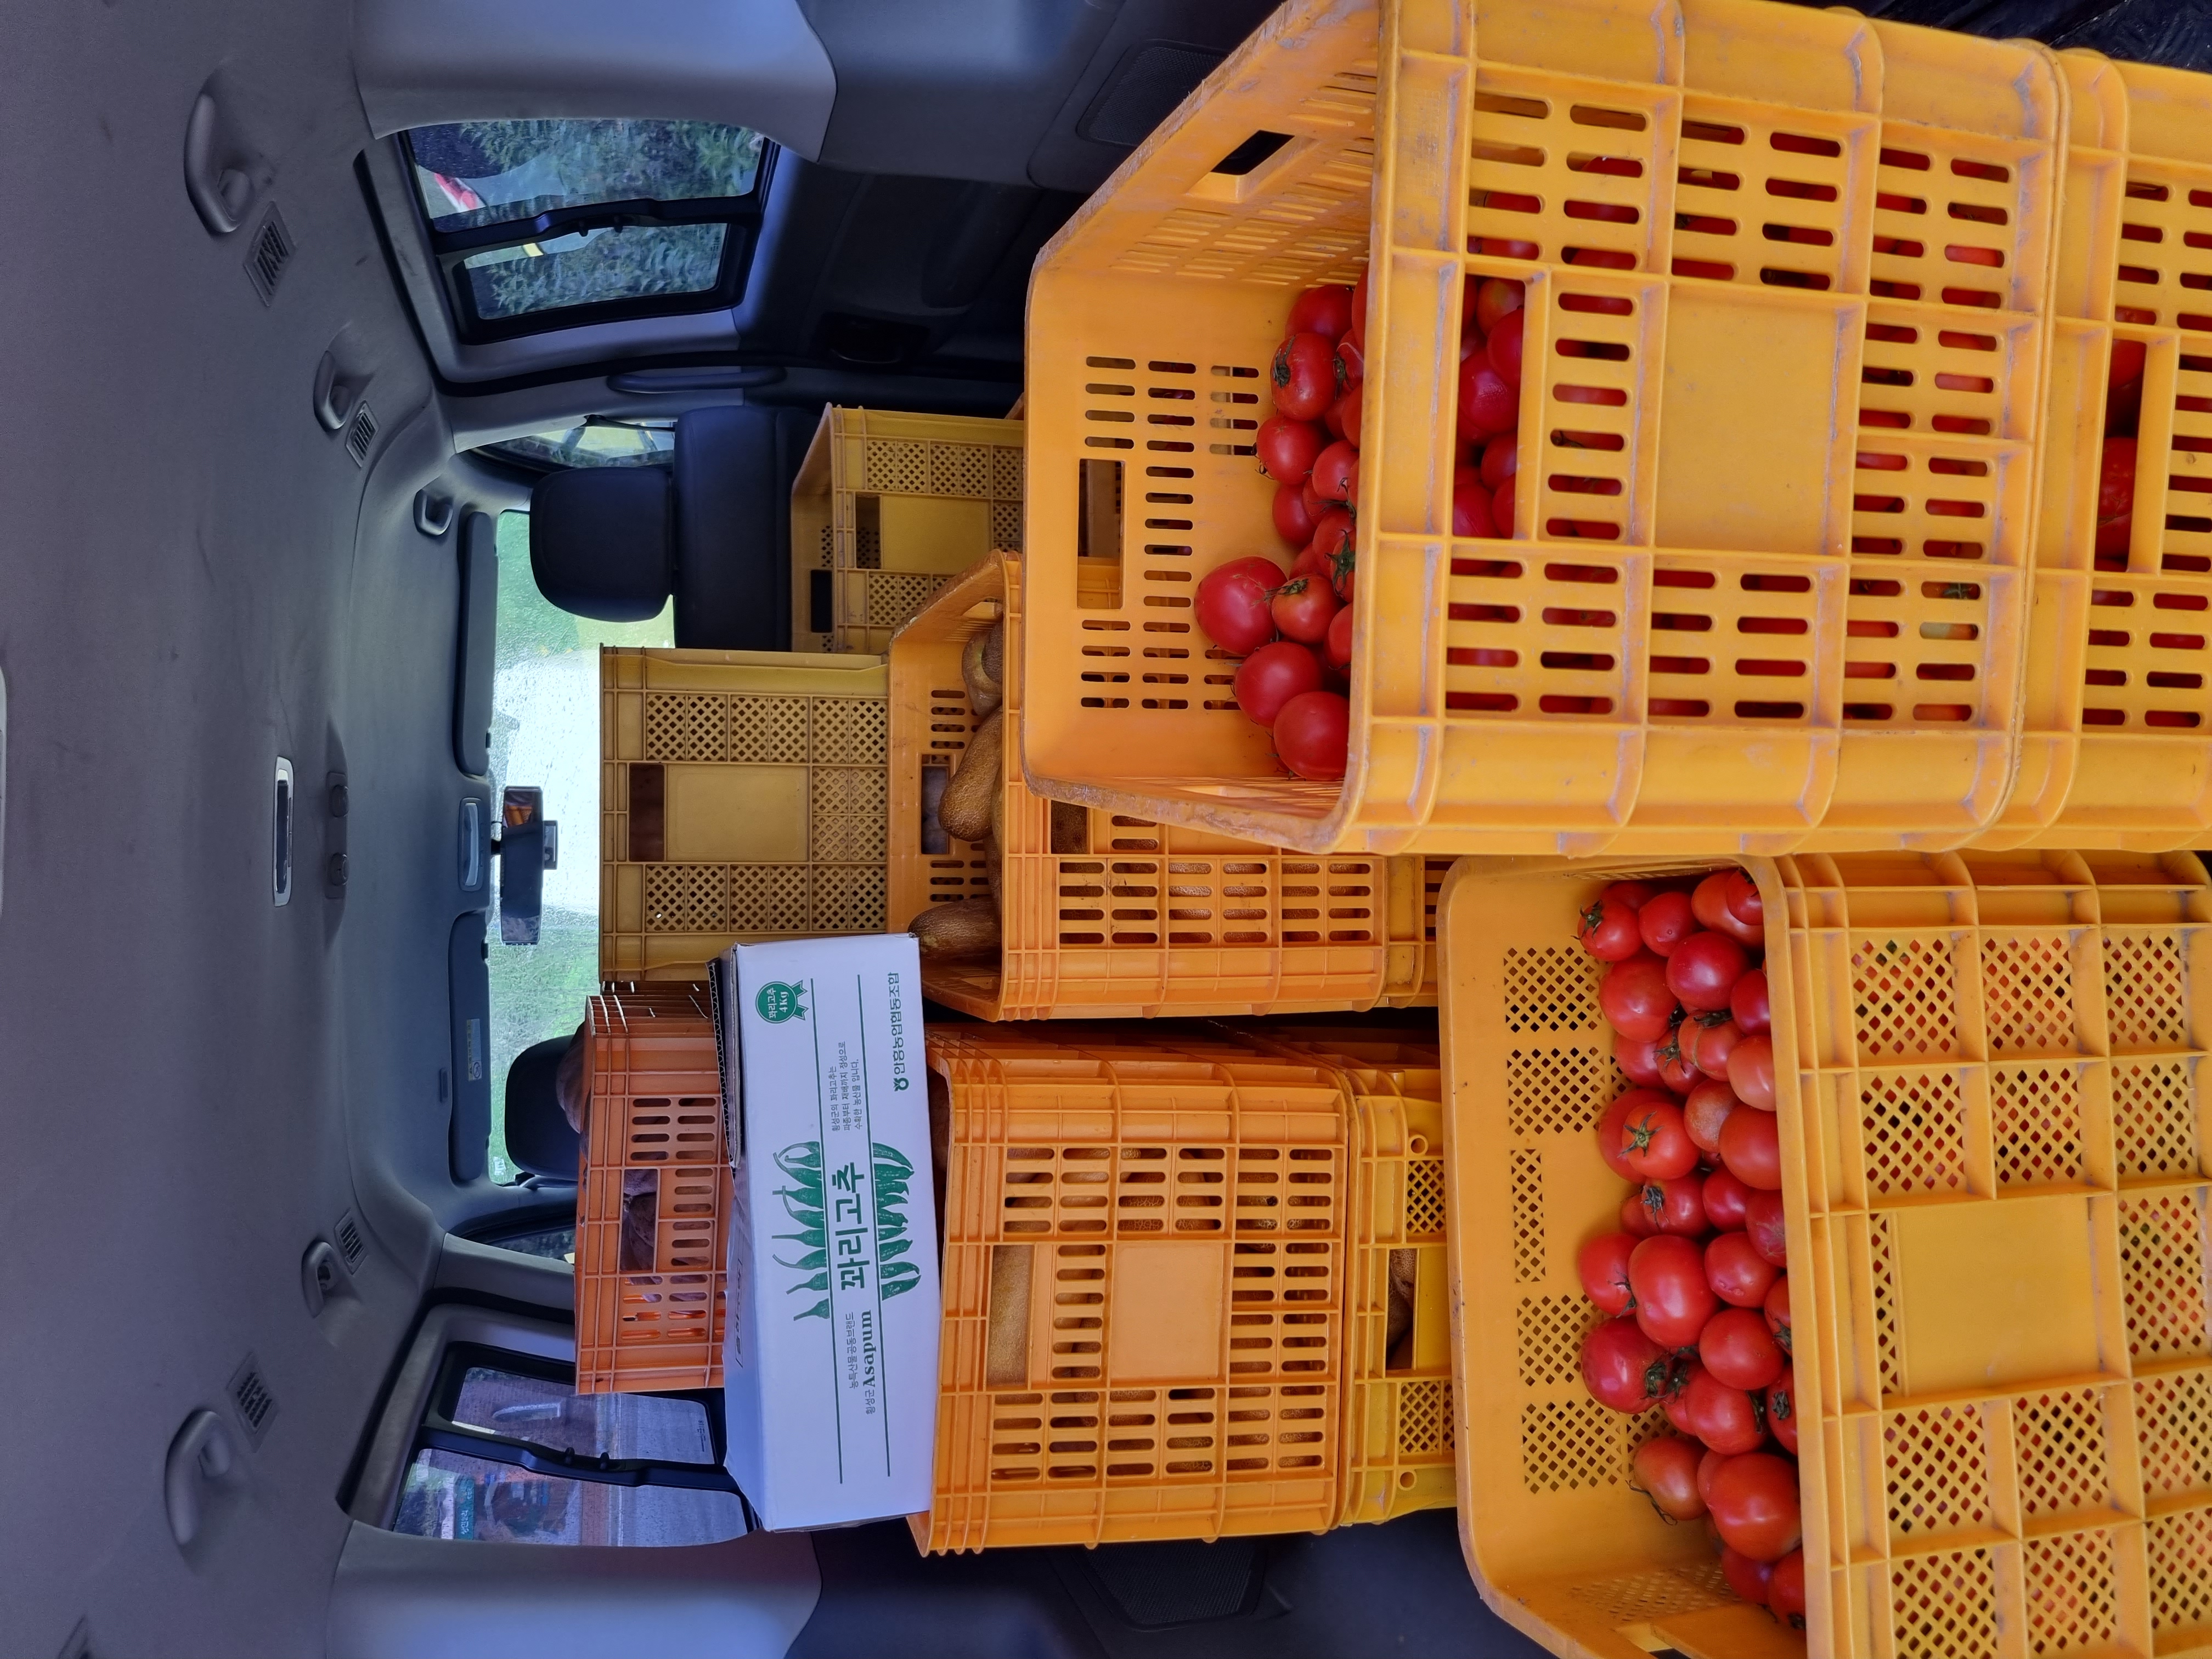 에덴건강원에서 토마토 10박스, 노각 10박스, 토종 호박 10박스를 후원해주셨습니다!